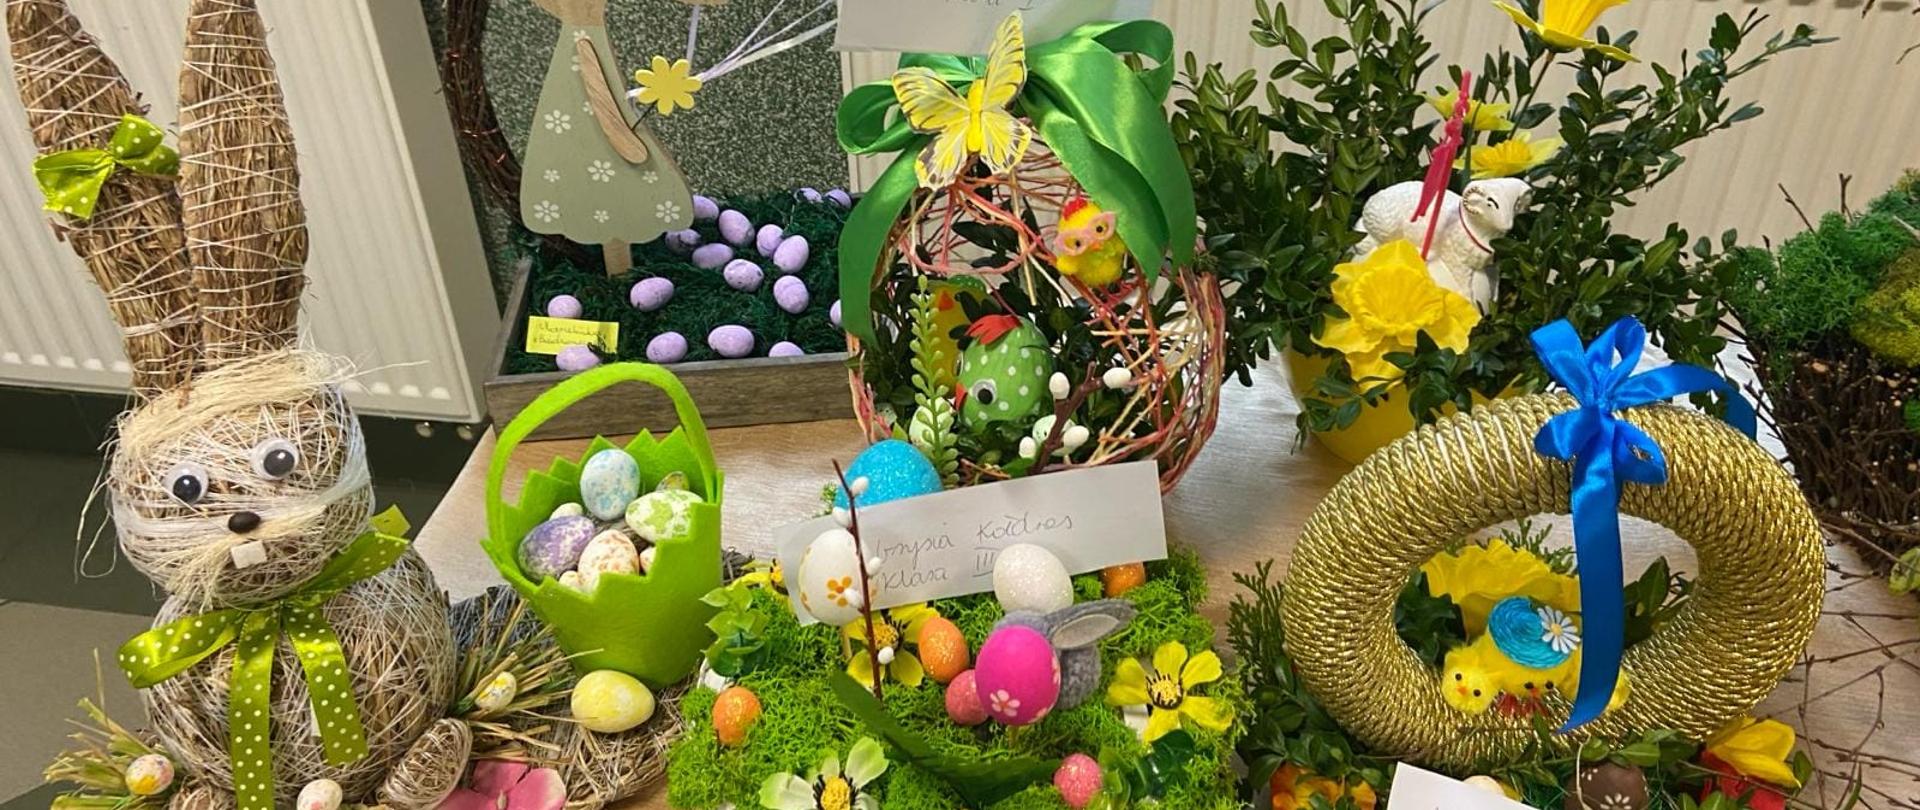 Stroiki przeznaczone na Kiermasz Wielkanocny wykonane z drewna, mchu, wikliny, bukszpanu i słomy, ozdobione jajeczkami, kwiatami, wstążkami, zajączkami, kurczaczkami, barankami, itp.